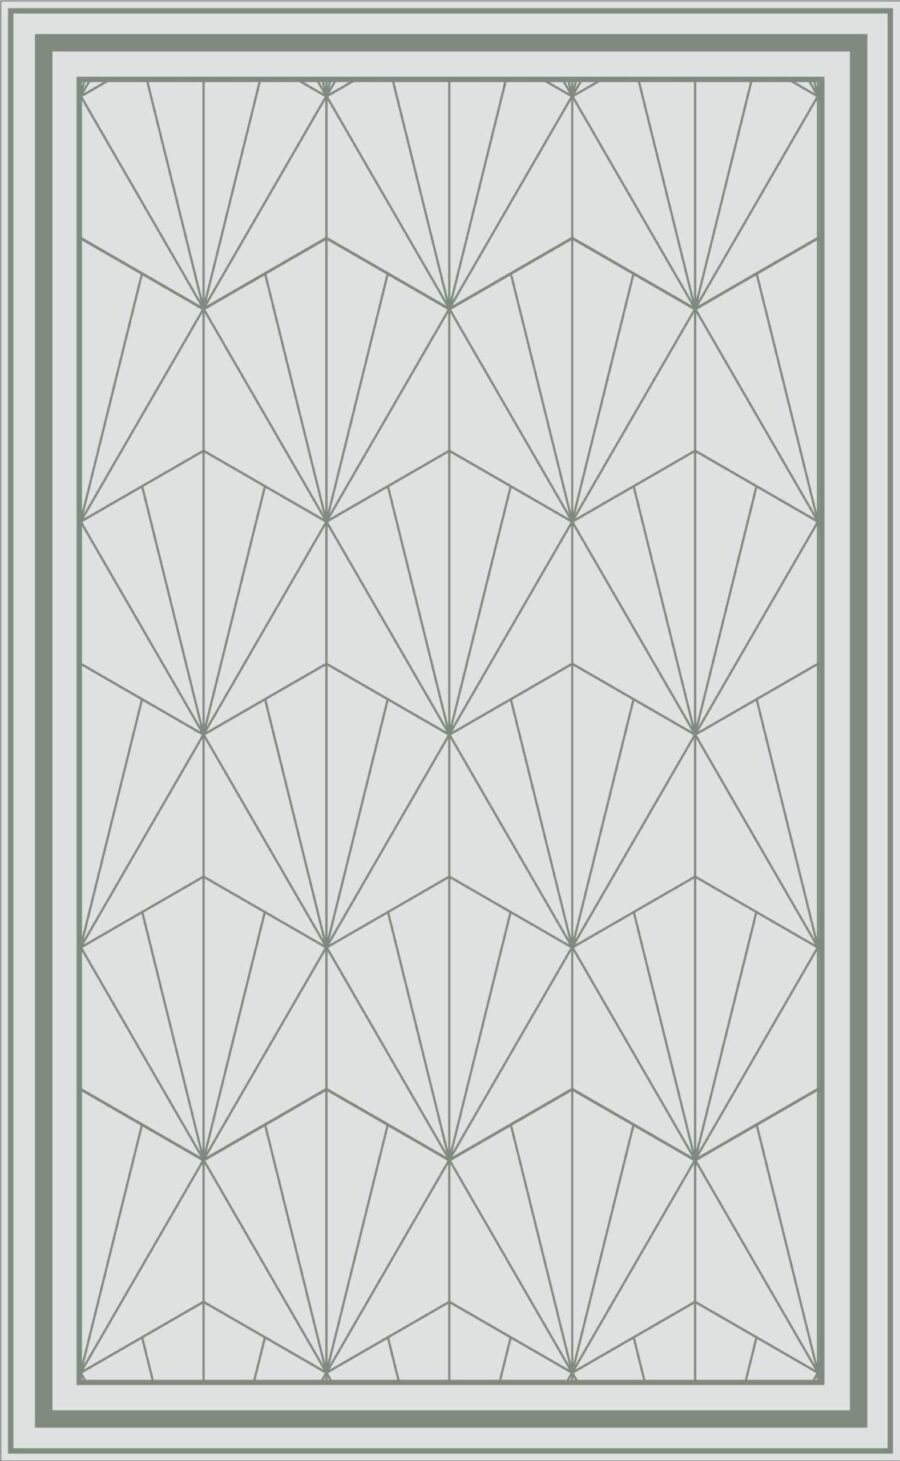 Alfombra vinilica diseño vectorial geometrico en tono gris